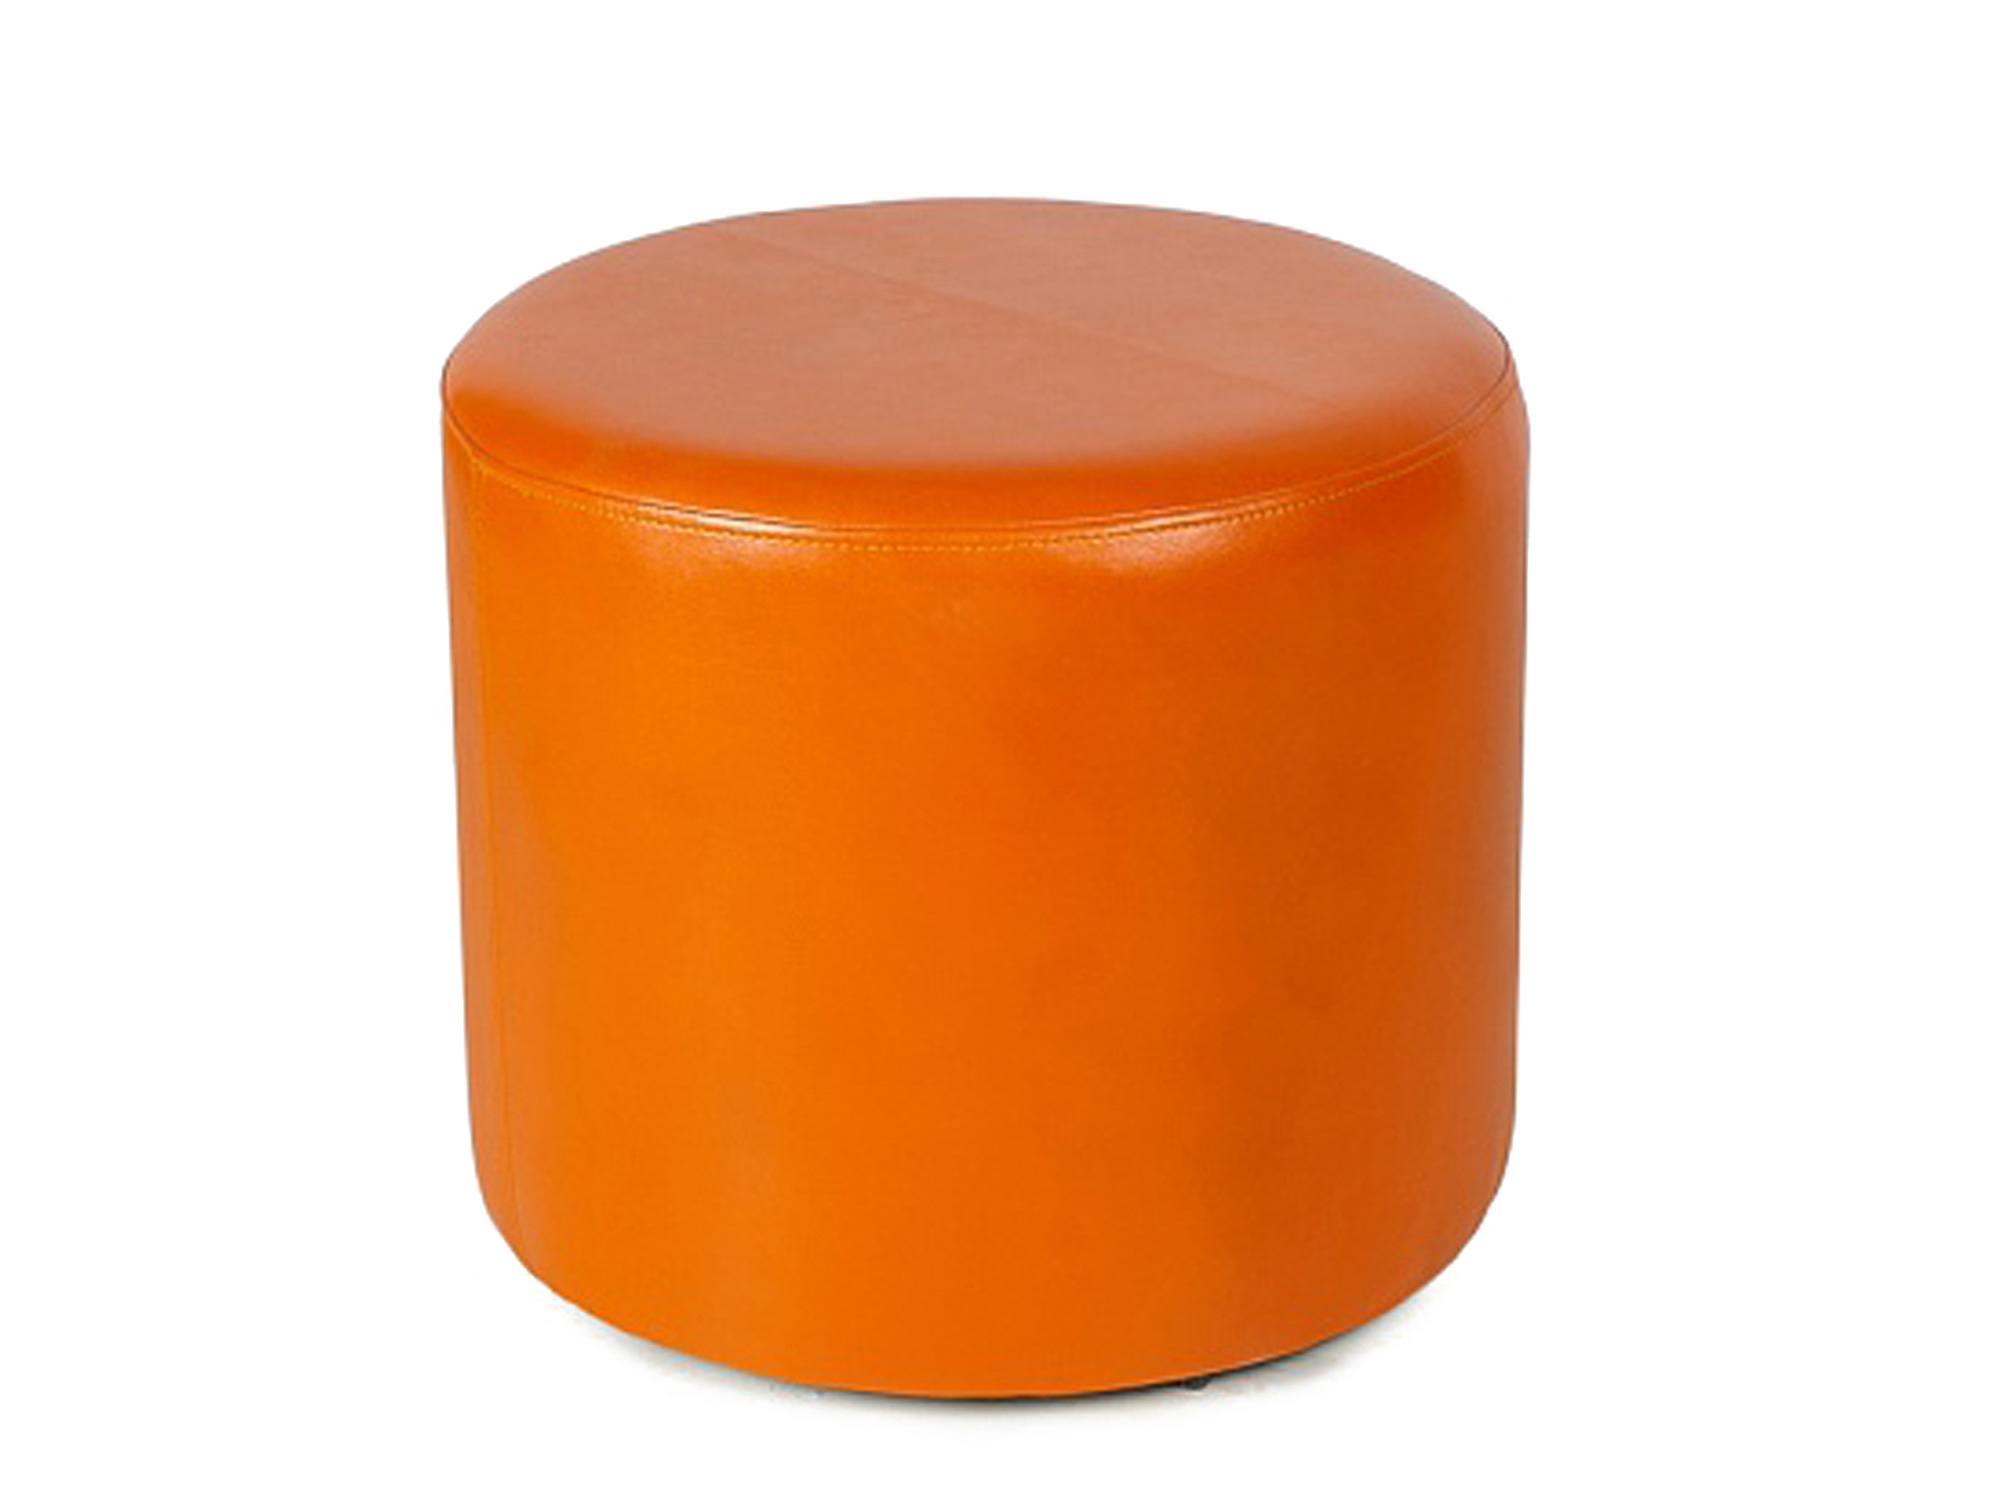 Пуф Pf-5 MebelVia Оранжевый, Искусственная кожа, ЛДСП пуф ромби 2 оранжевый к з mebelvia оранжевый искусственная кожа дсп